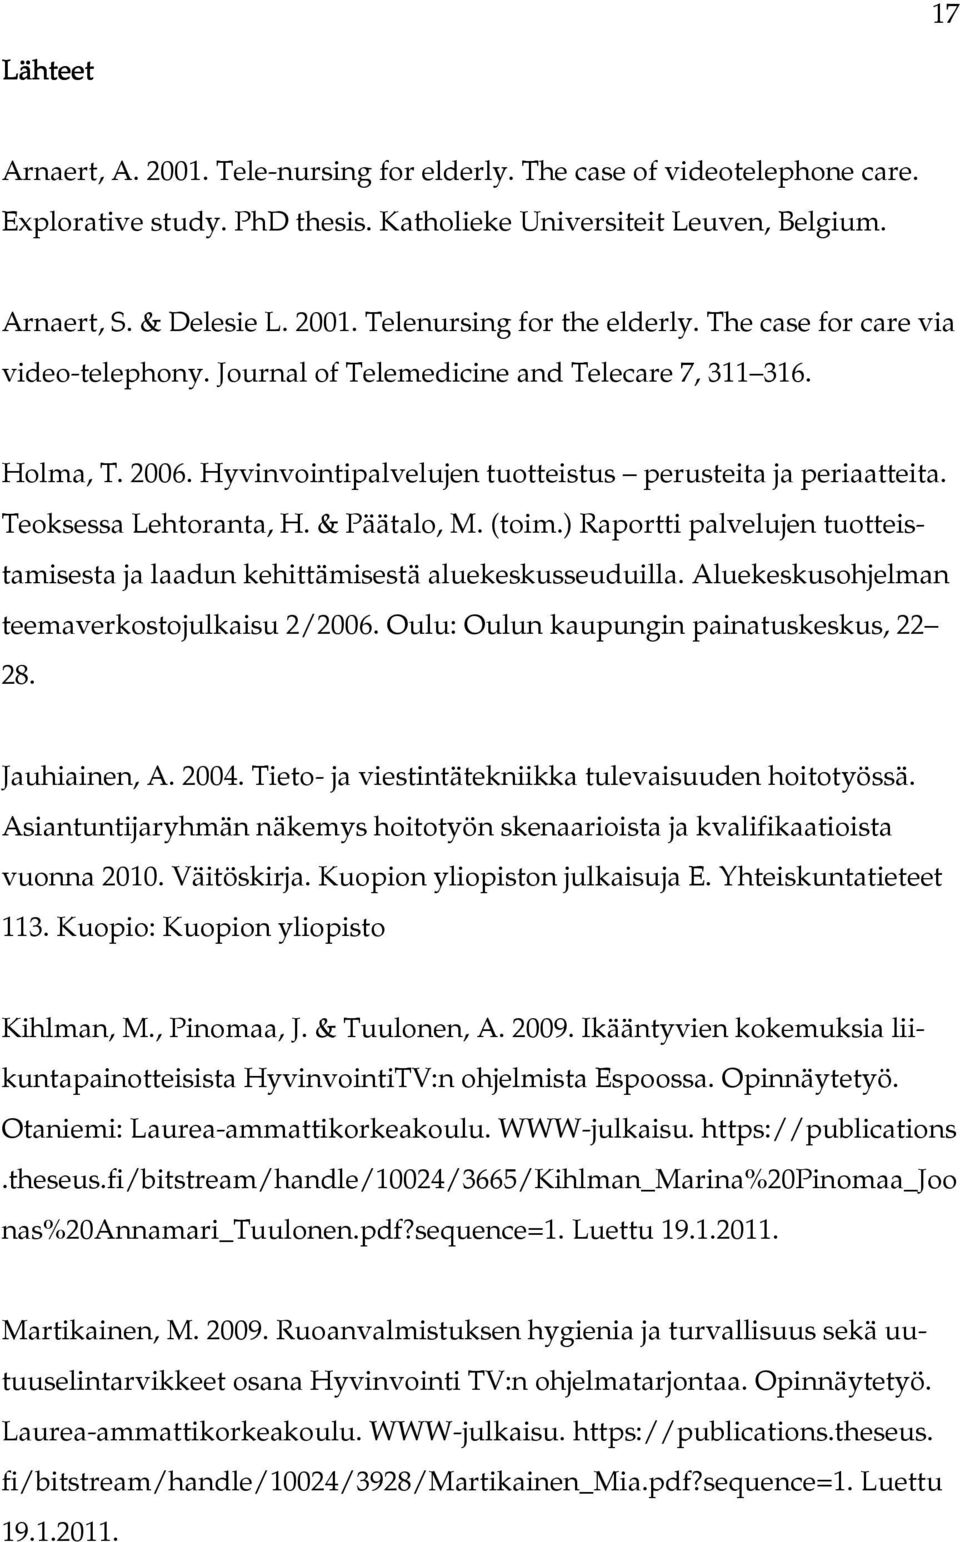 & Päätalo, M. (toim.) Raportti palvelujen tuotteistamisesta ja laadun kehittämisestä aluekeskusseuduilla. Aluekeskusohjelman teemaverkostojulkaisu 2/2006. Oulu: Oulun kaupungin painatuskeskus, 22 28.